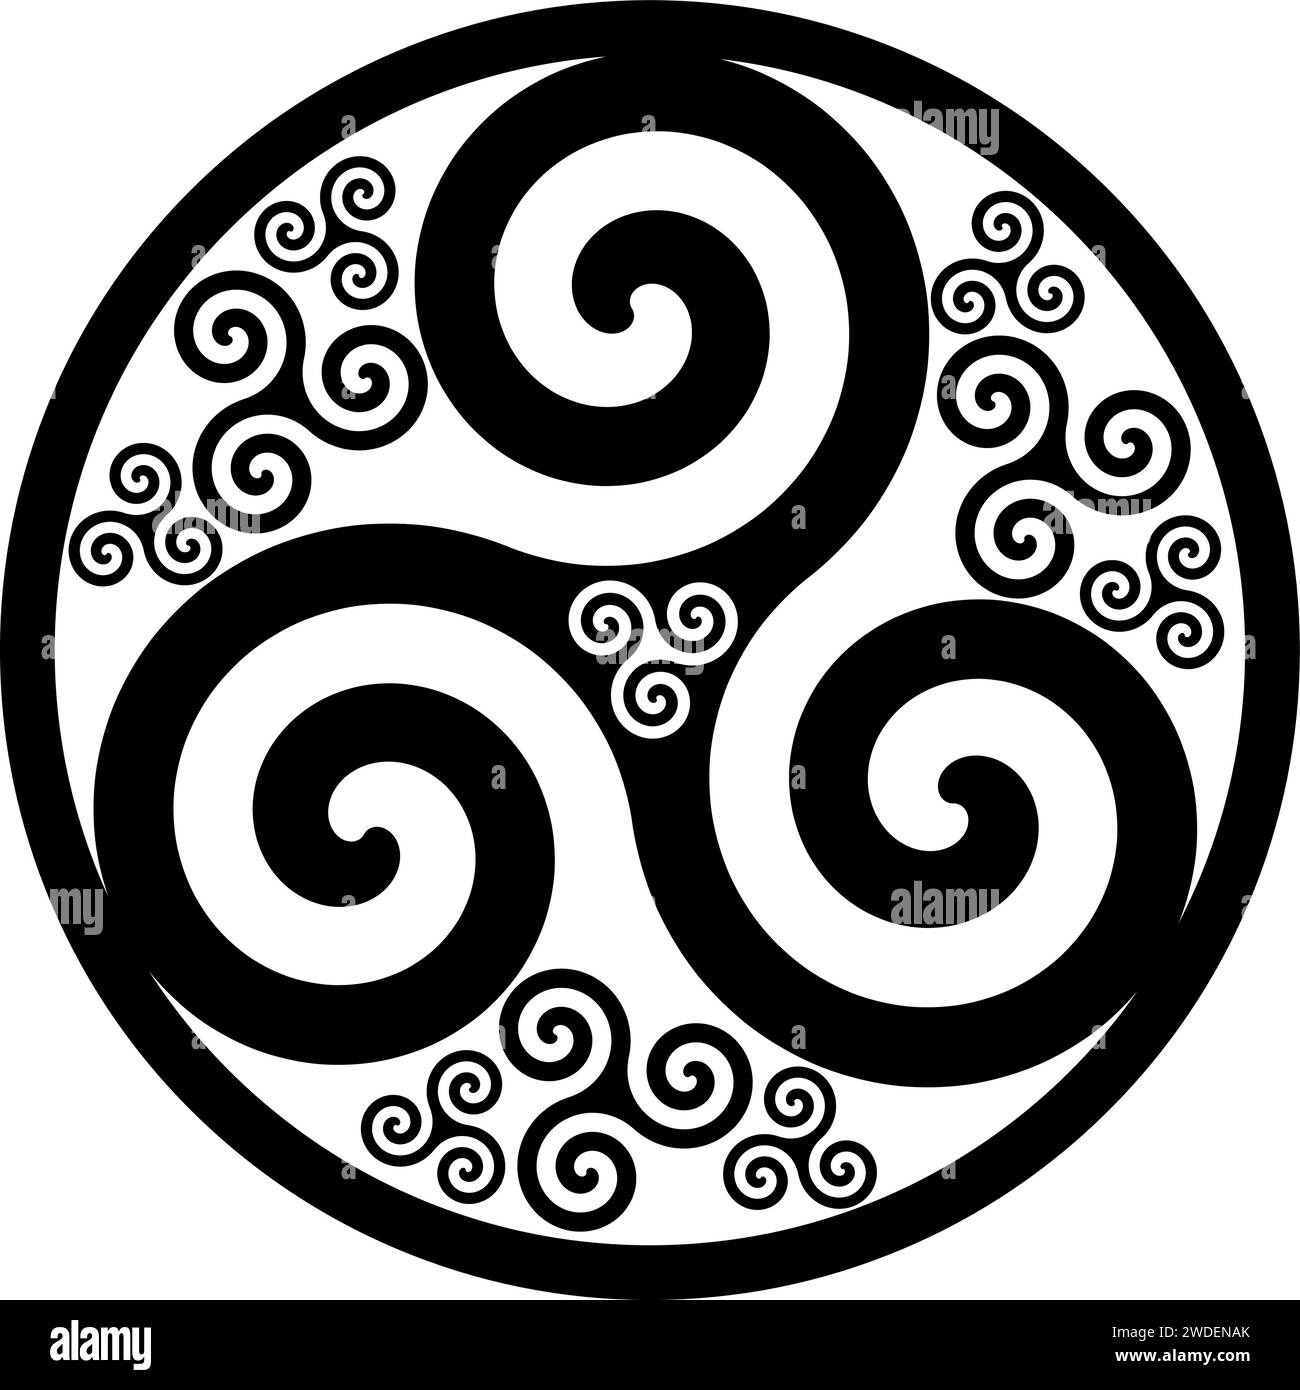 La géométrie sacrée du cercle, symbolisme de l'unité du Tout.